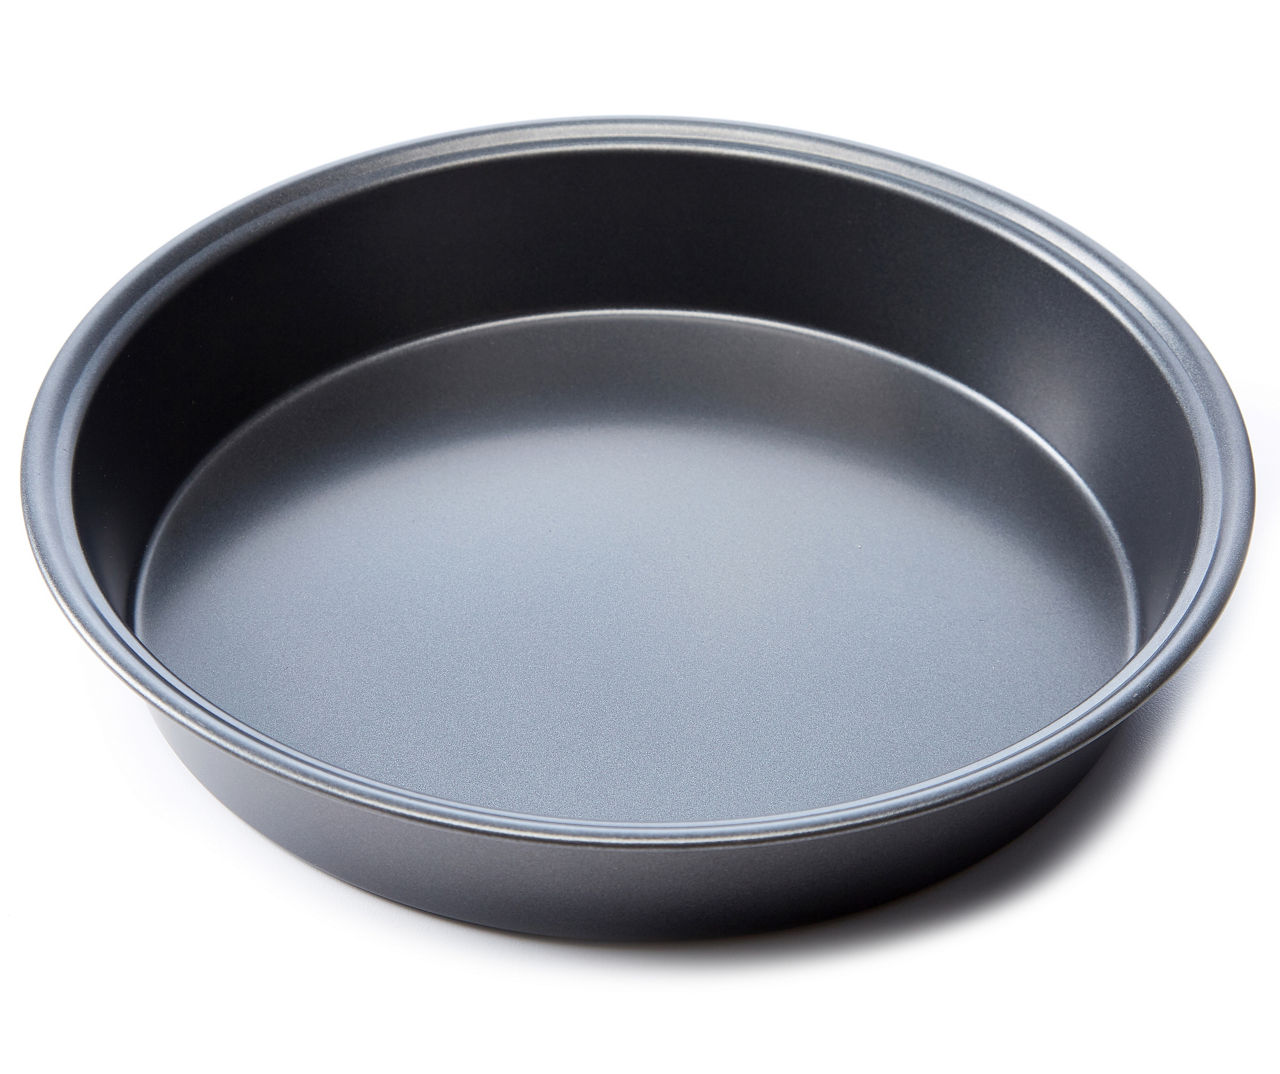 circle baking pan